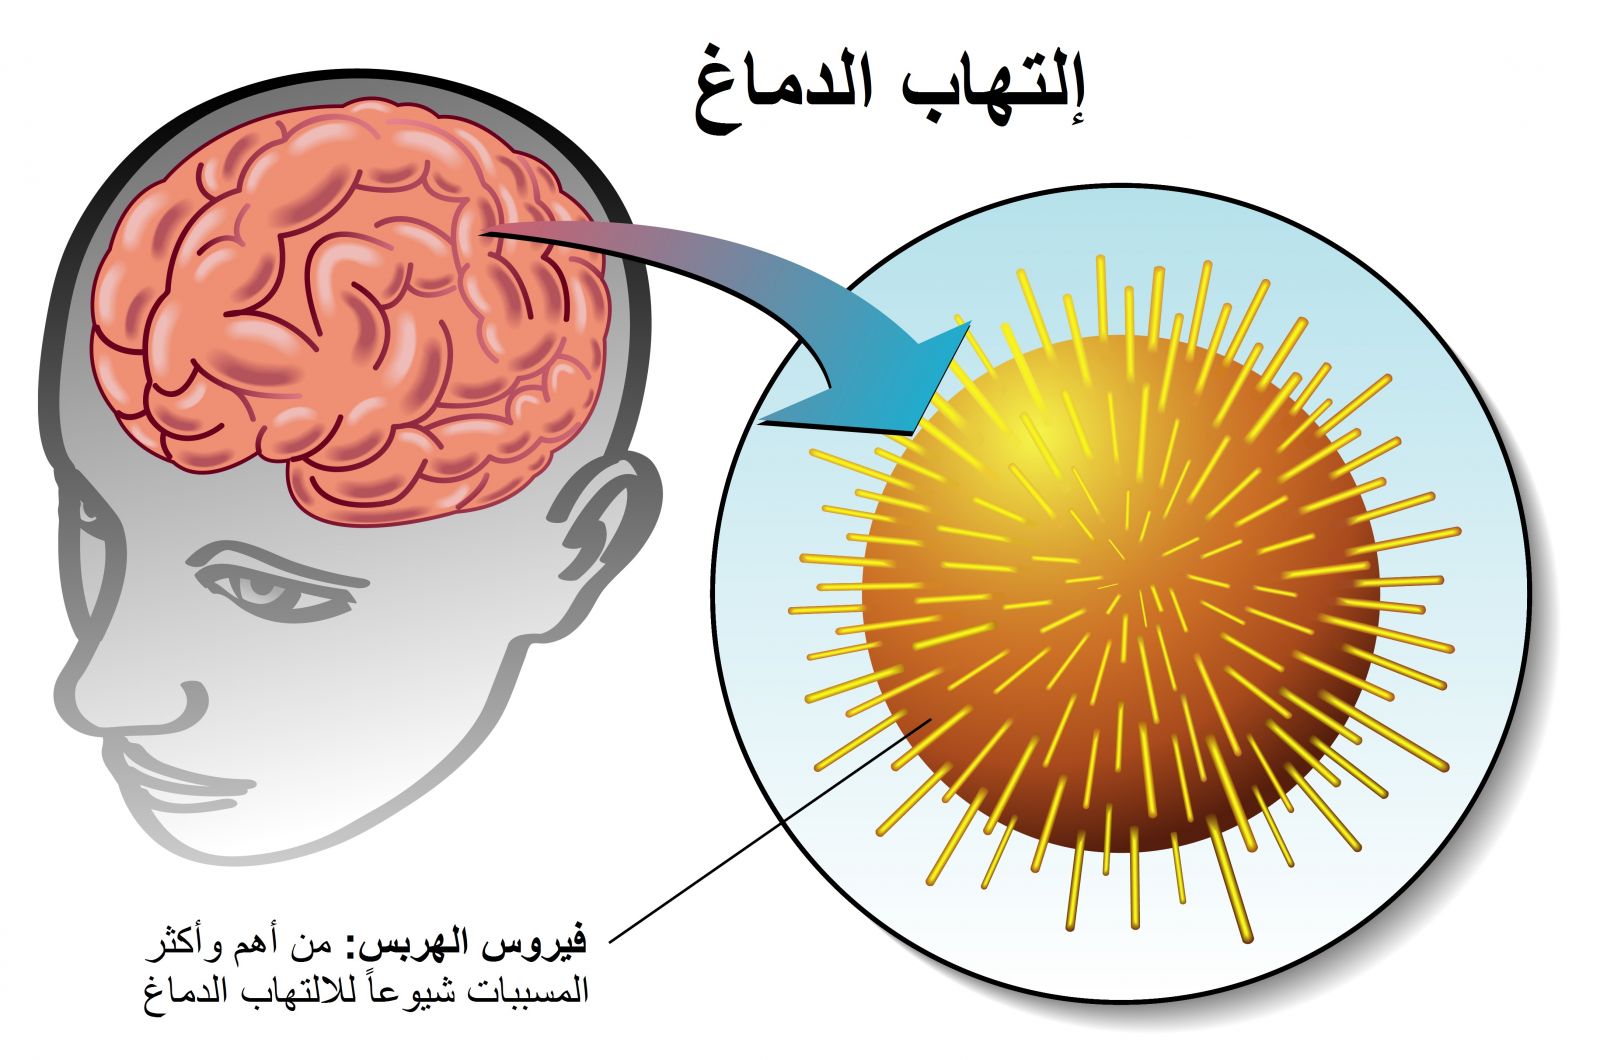 فيروس الهربس من اكثر المسببات شيوعاً لمرض التهاب الدماغ